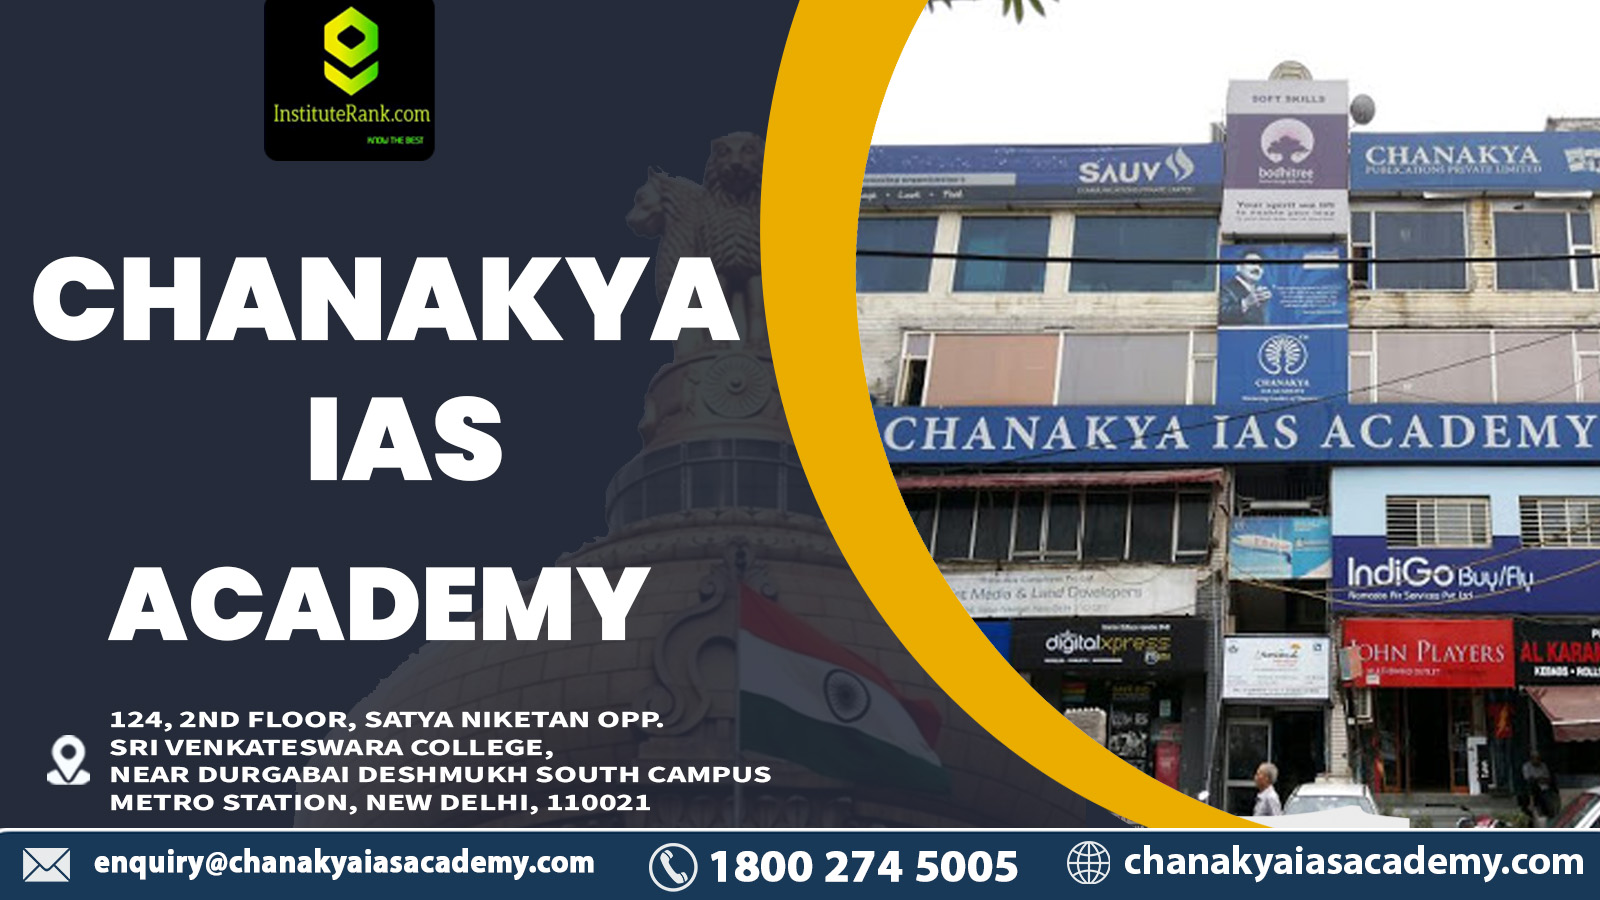 Chanakya IAS Academy in Delhi